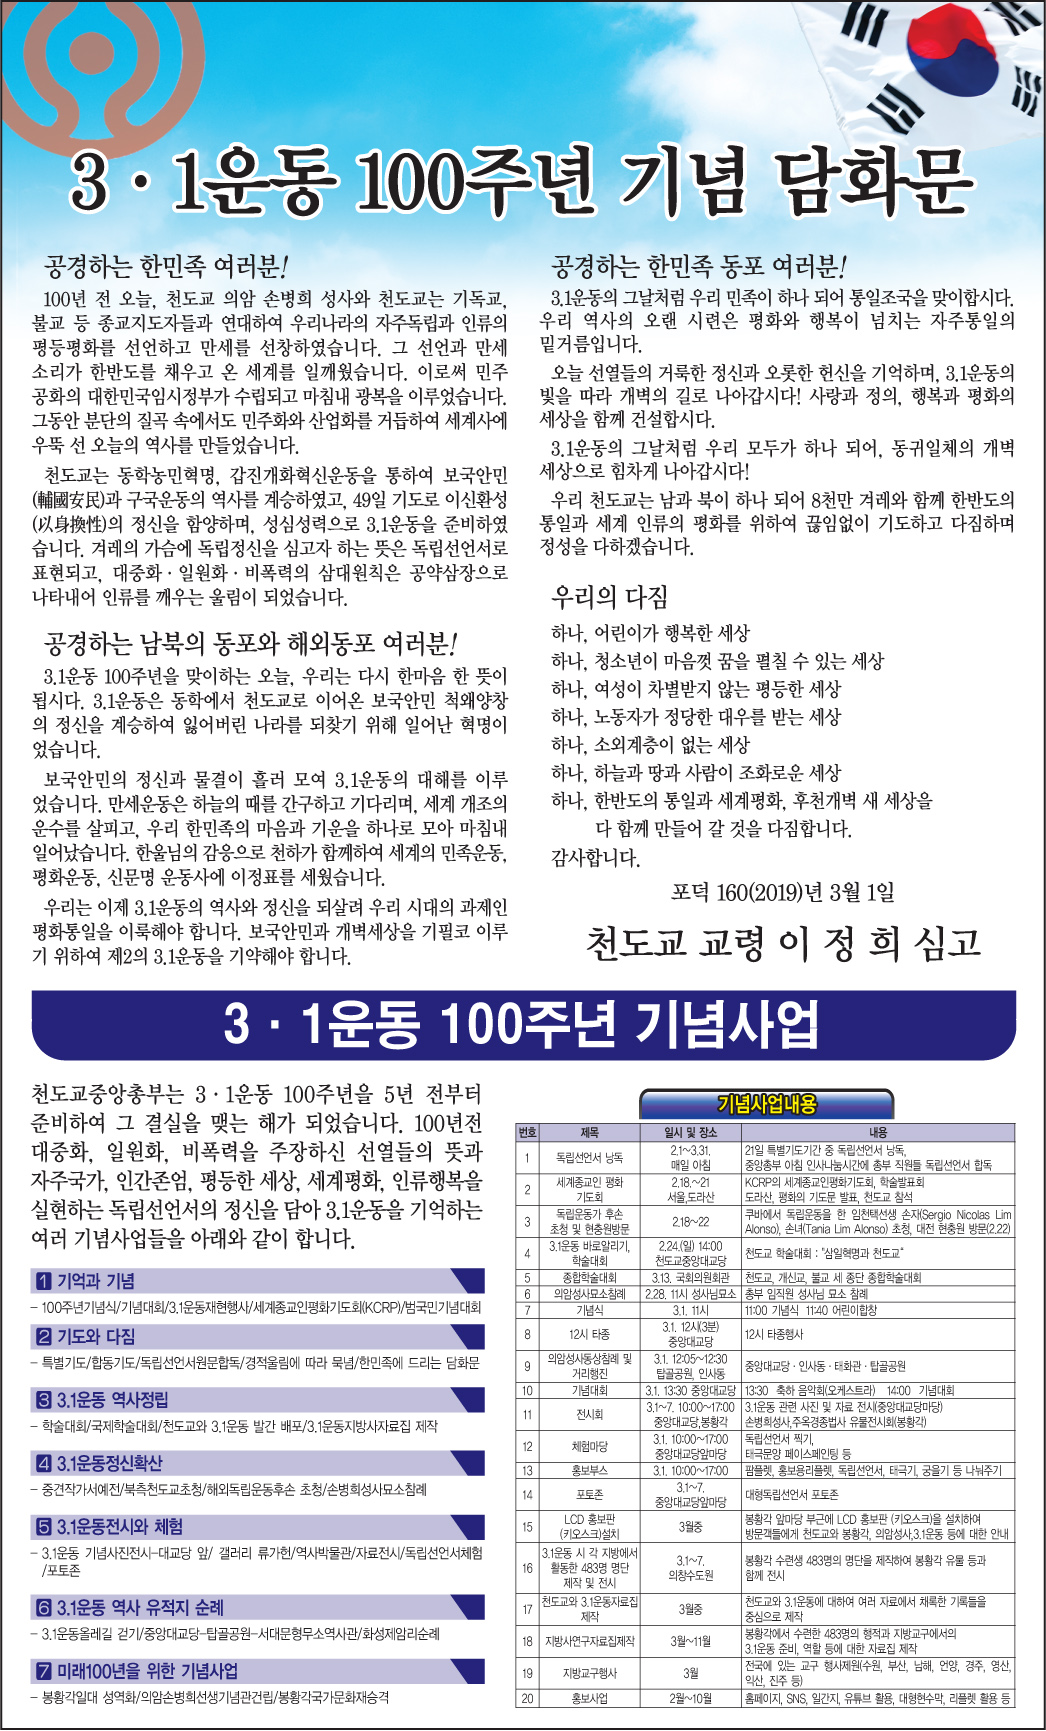 2월 28일자 조선일보 특집기사 이미지